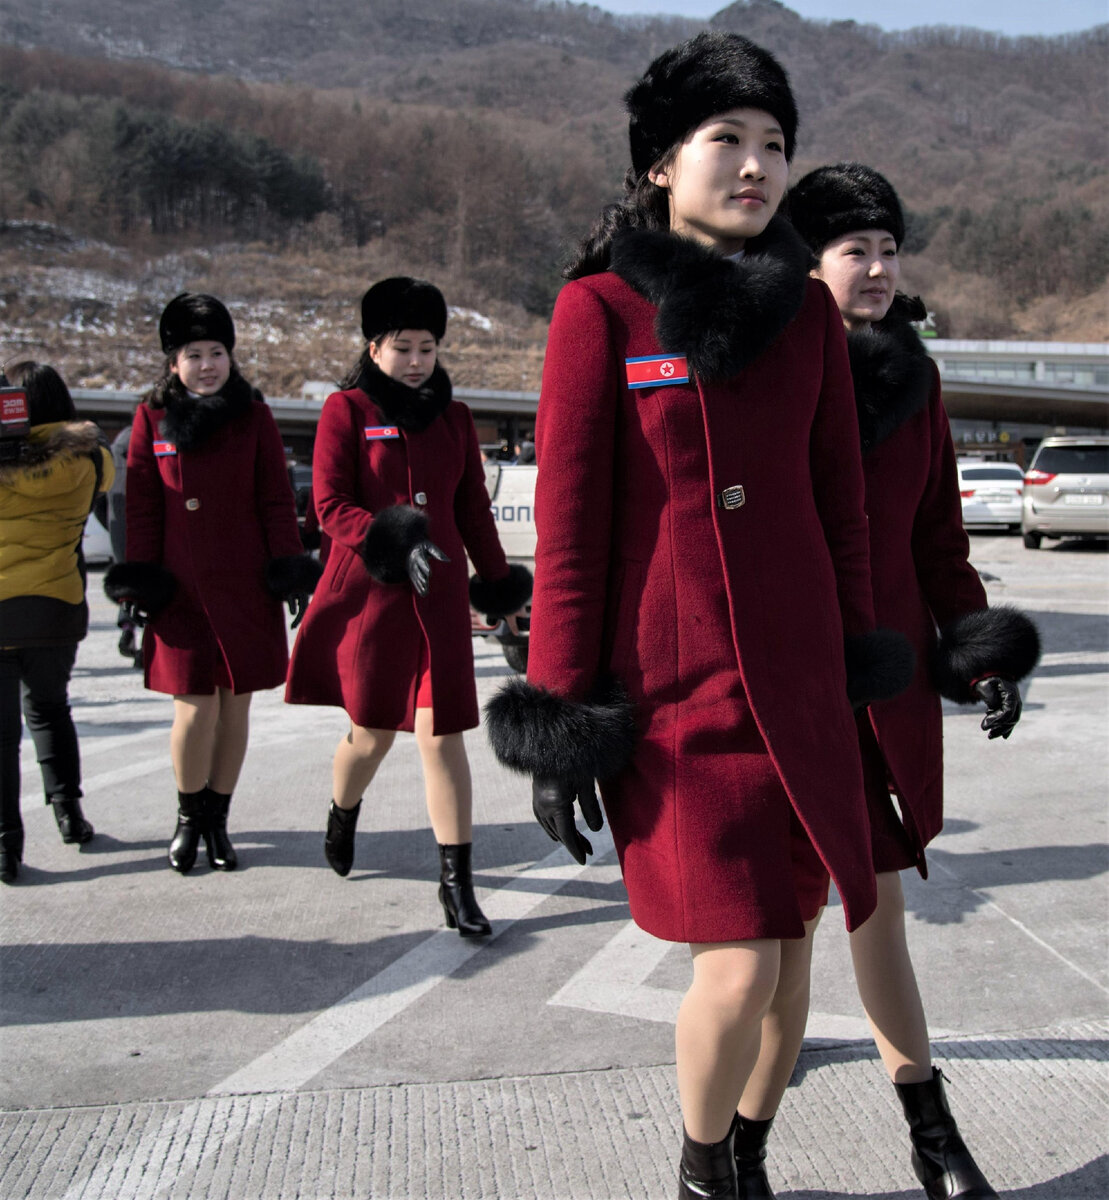 В 2010 году 20 летняя девушка Ми Хян бежала из Северной Кореи и рассказала в интервью журналу Marie Claire о том, что несколько лет служила в секретной государственной бригаде «киппымчо» (дословно в-2